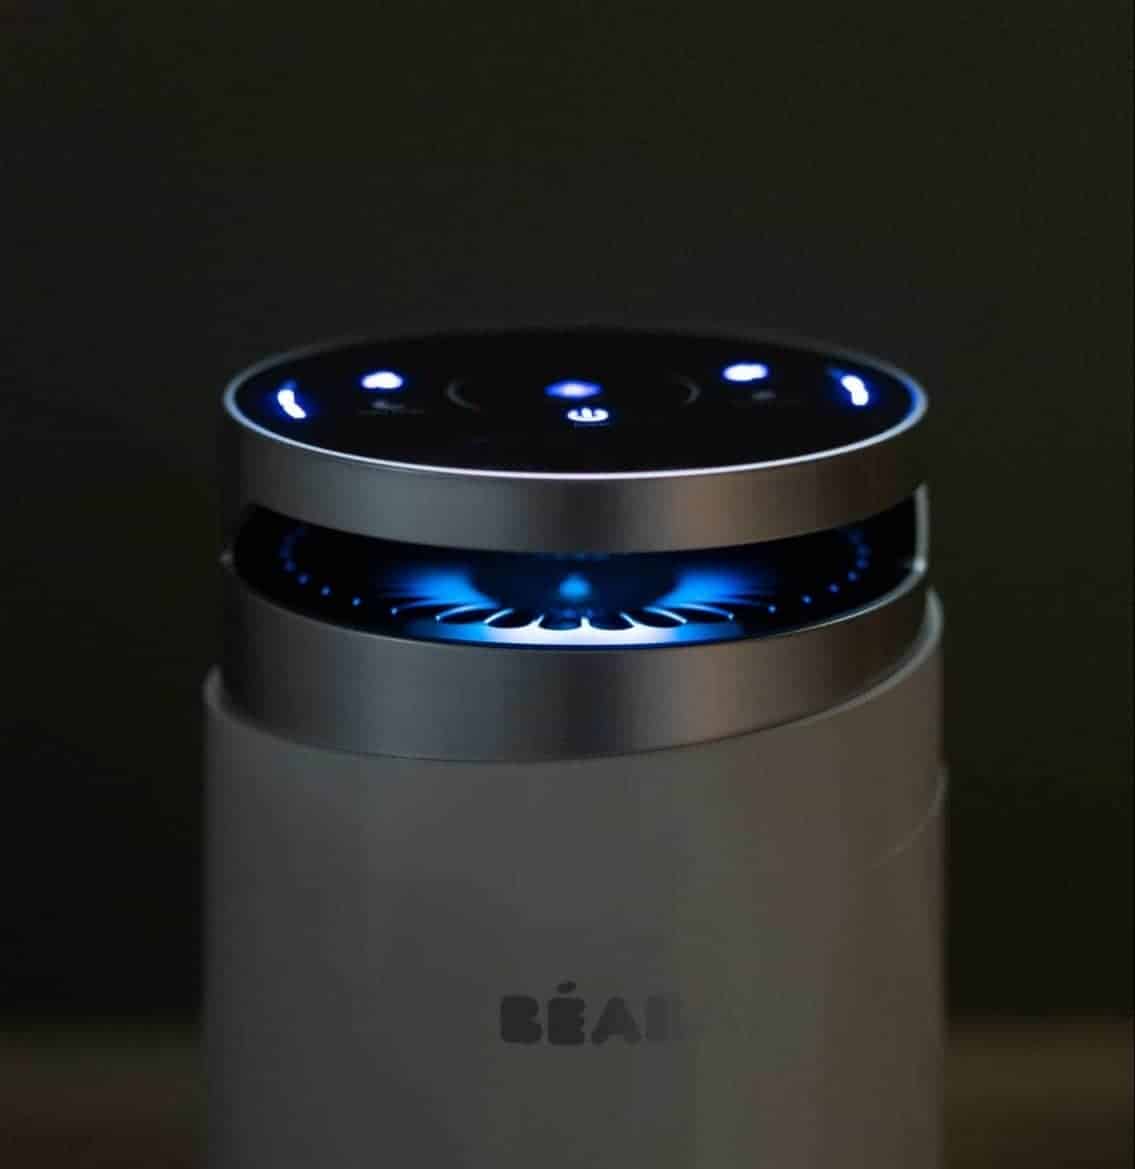 Beaba Air purifer at night